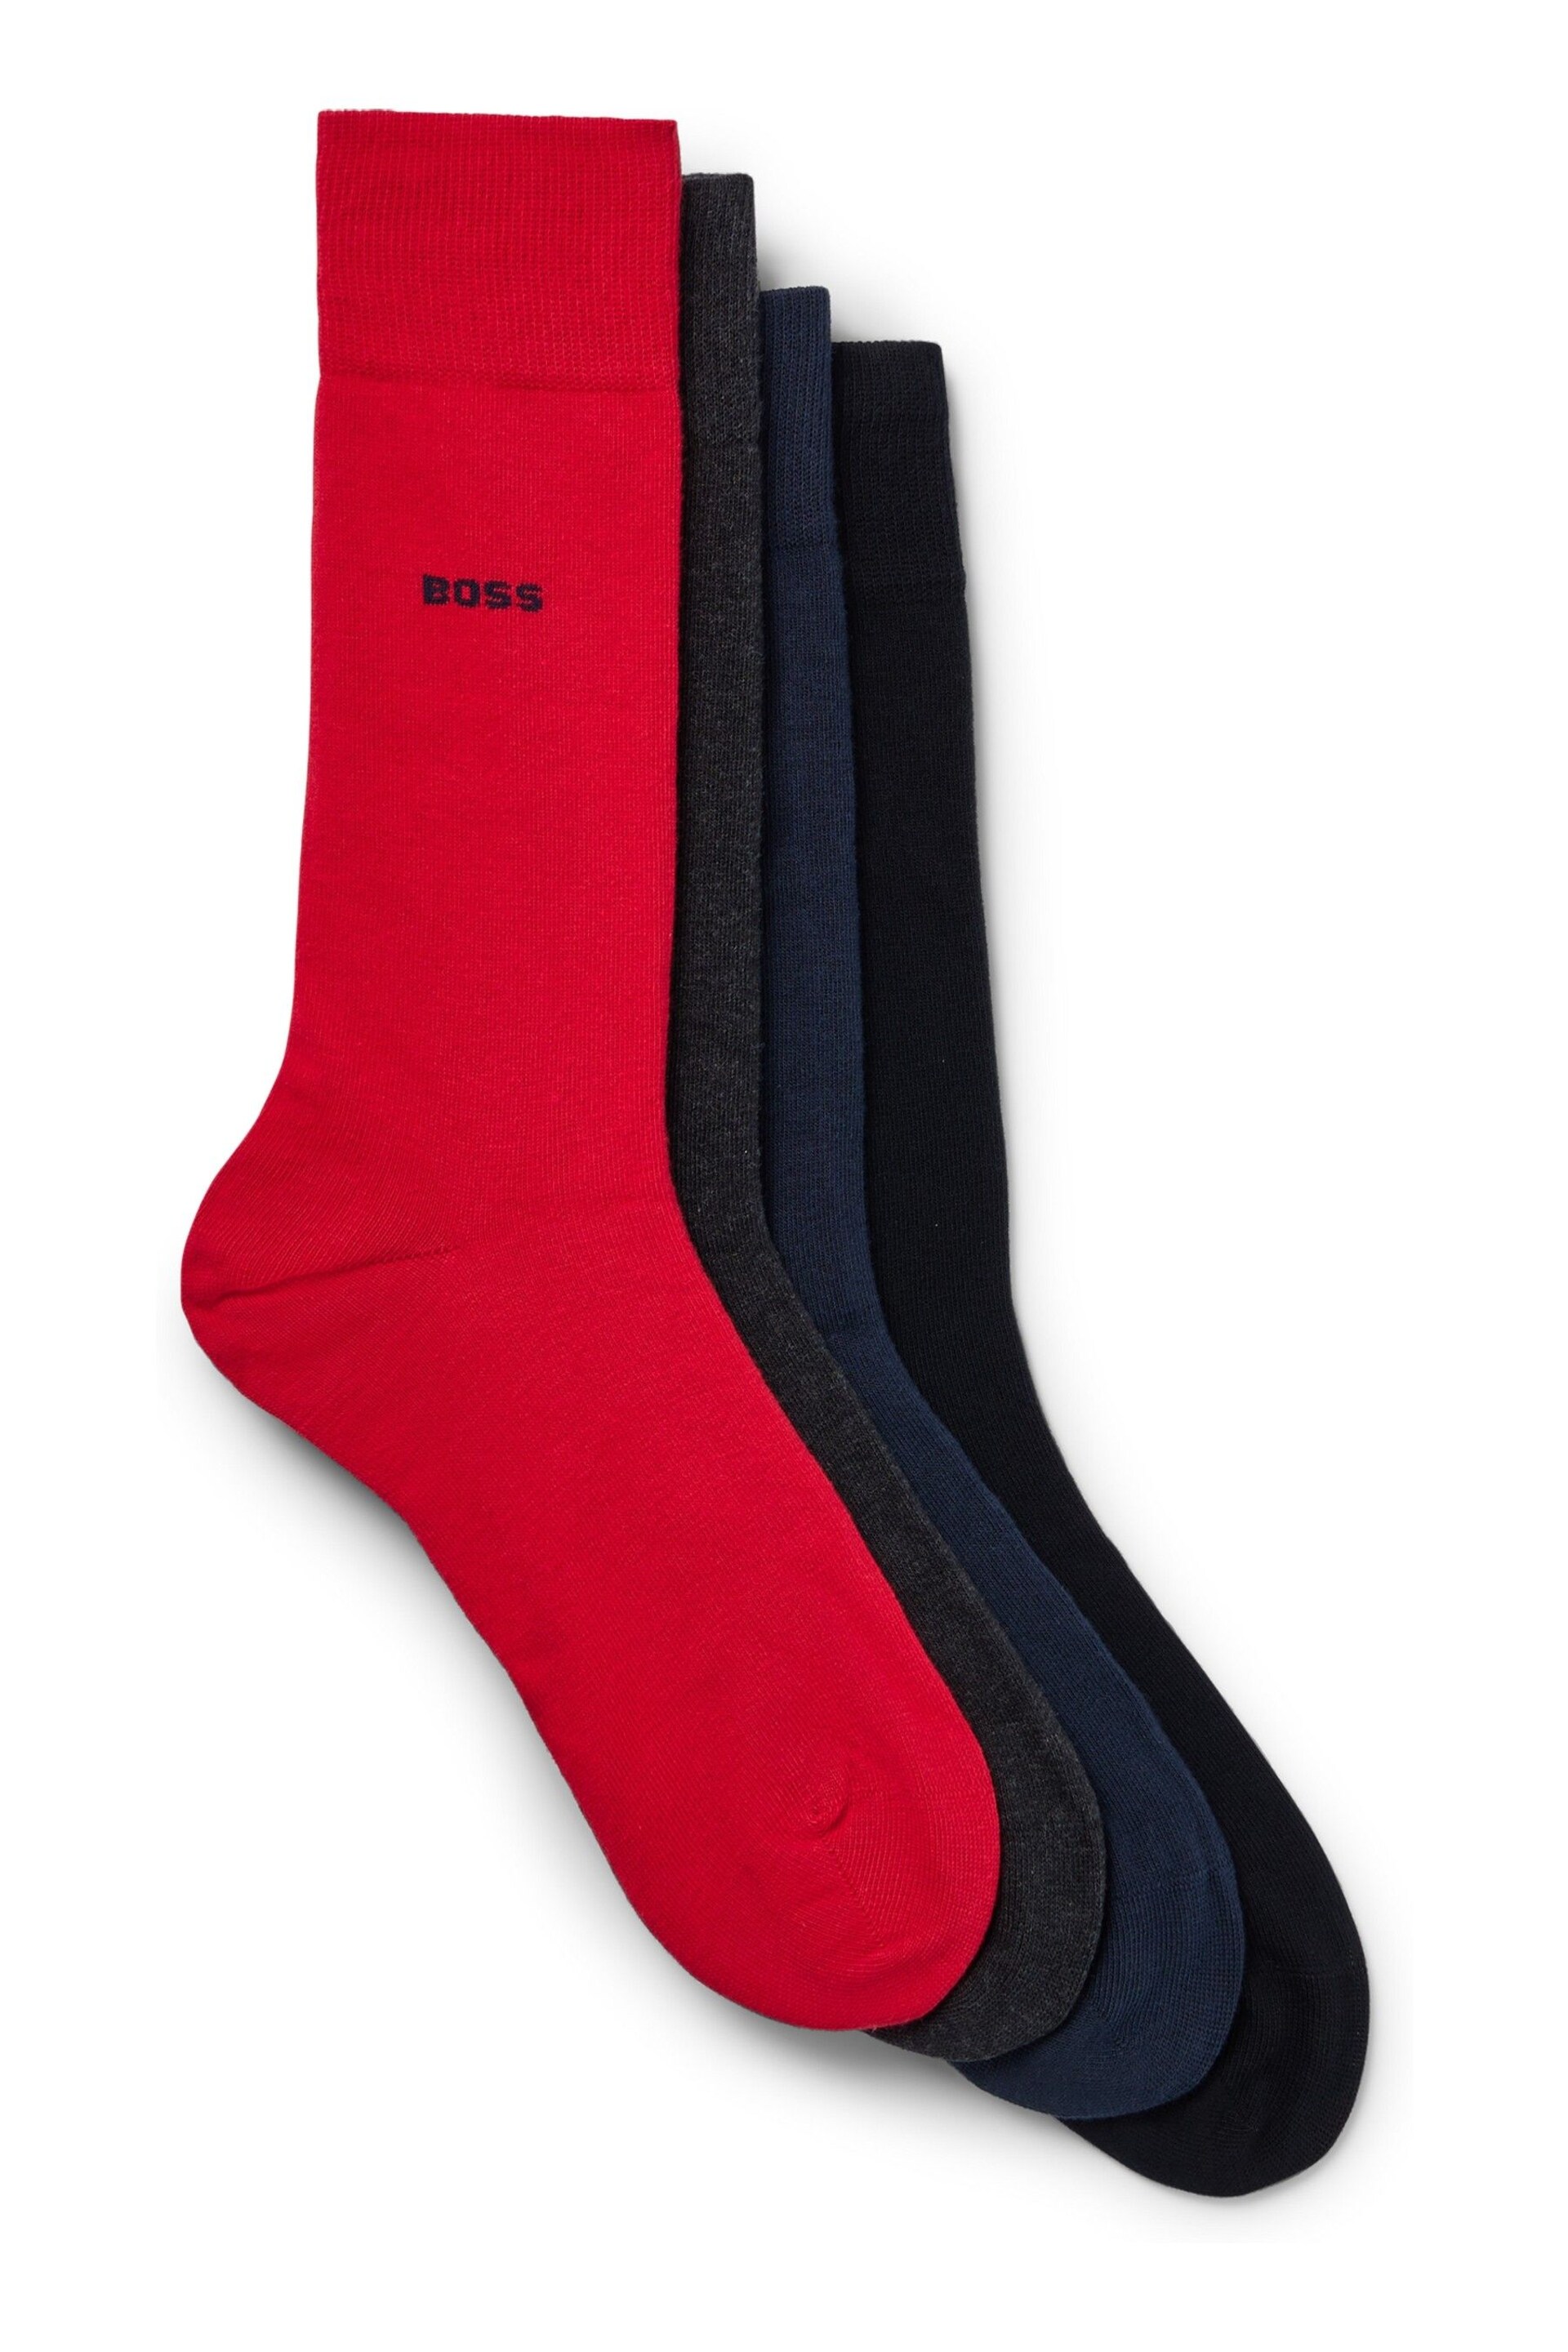 BOSS Red Uni Socks Gift Set 4 Pack - Image 1 of 3